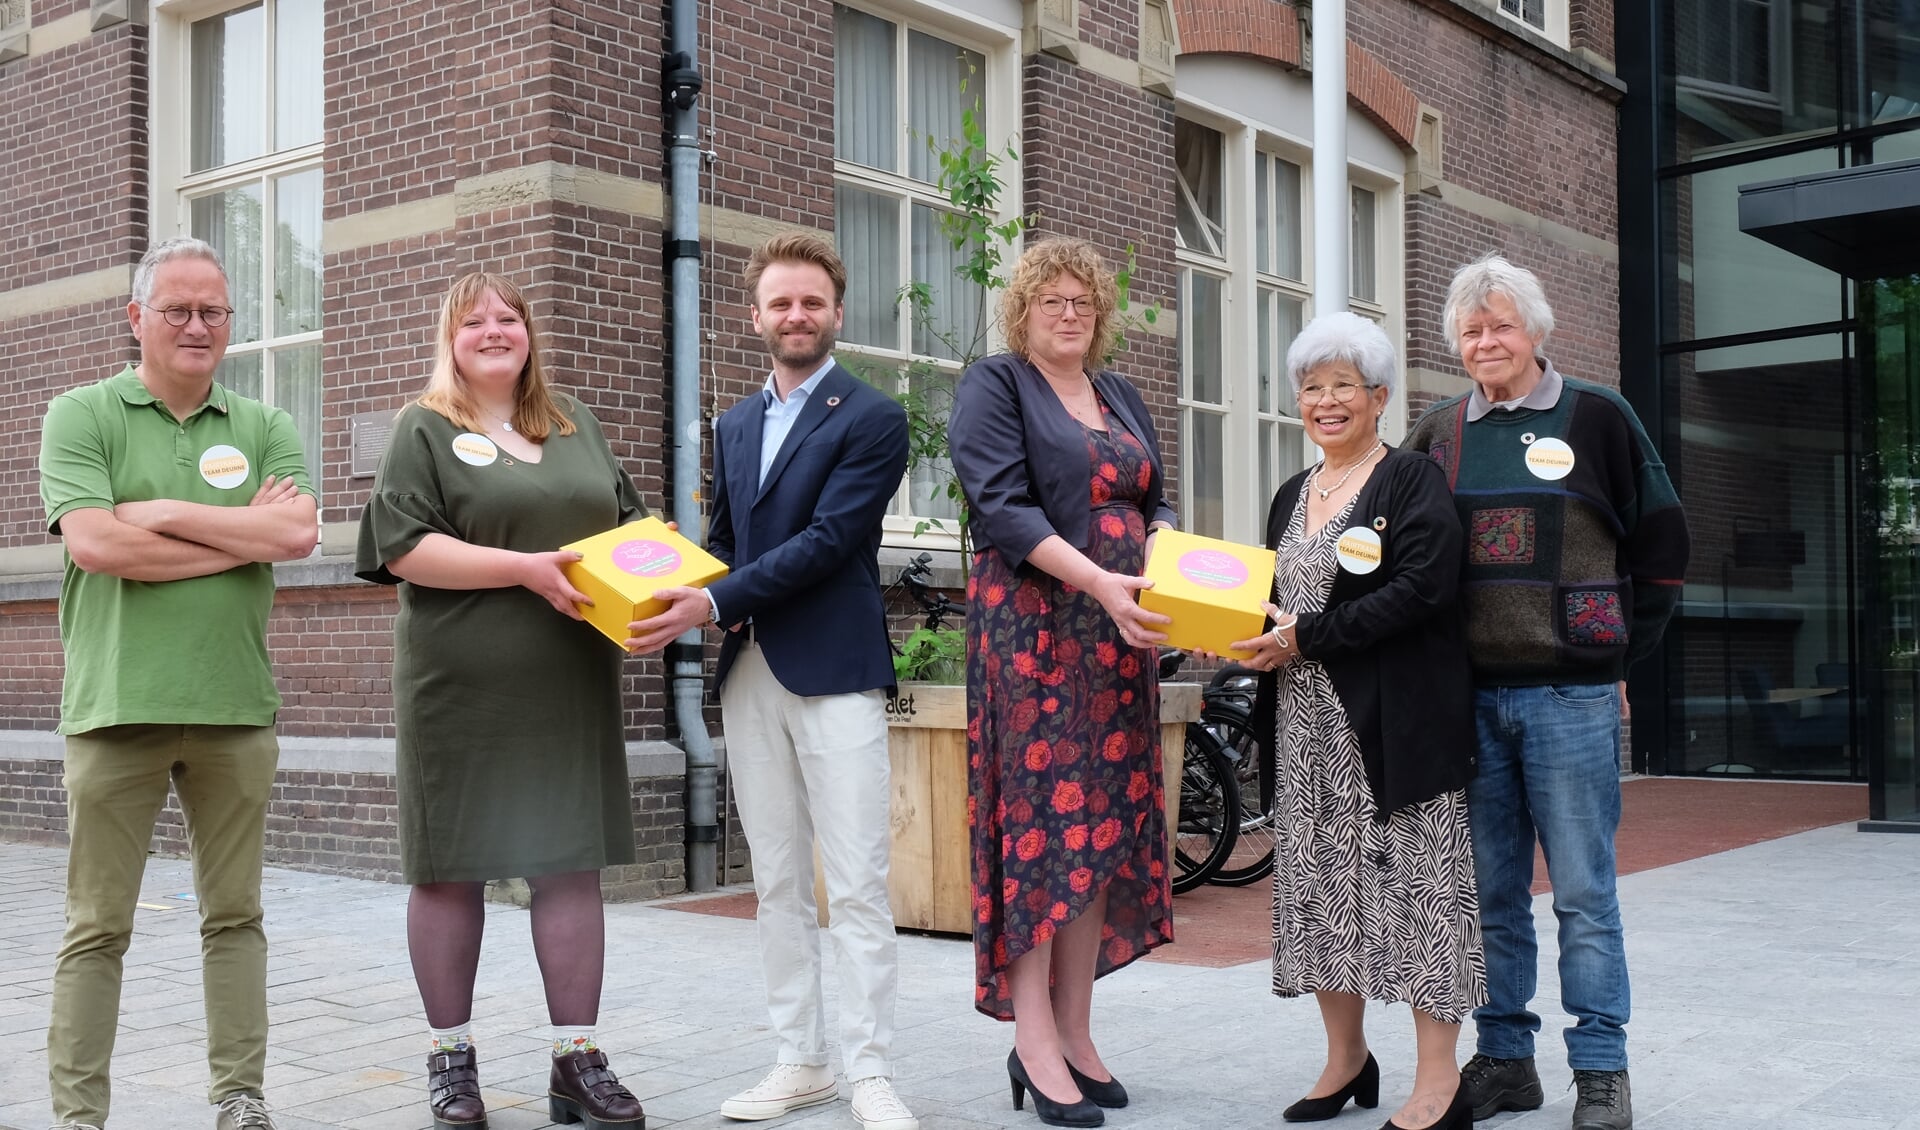 Wethouder Tom Oomen en burgemeester Greet Buter (in het midden) ontvangen de Fairtrade-box uit handen van Kernteam Fairtrade: Michel Lintermans, Jannine Brugman-Meijer, Lieve Glas en Lambert van Lieshout.